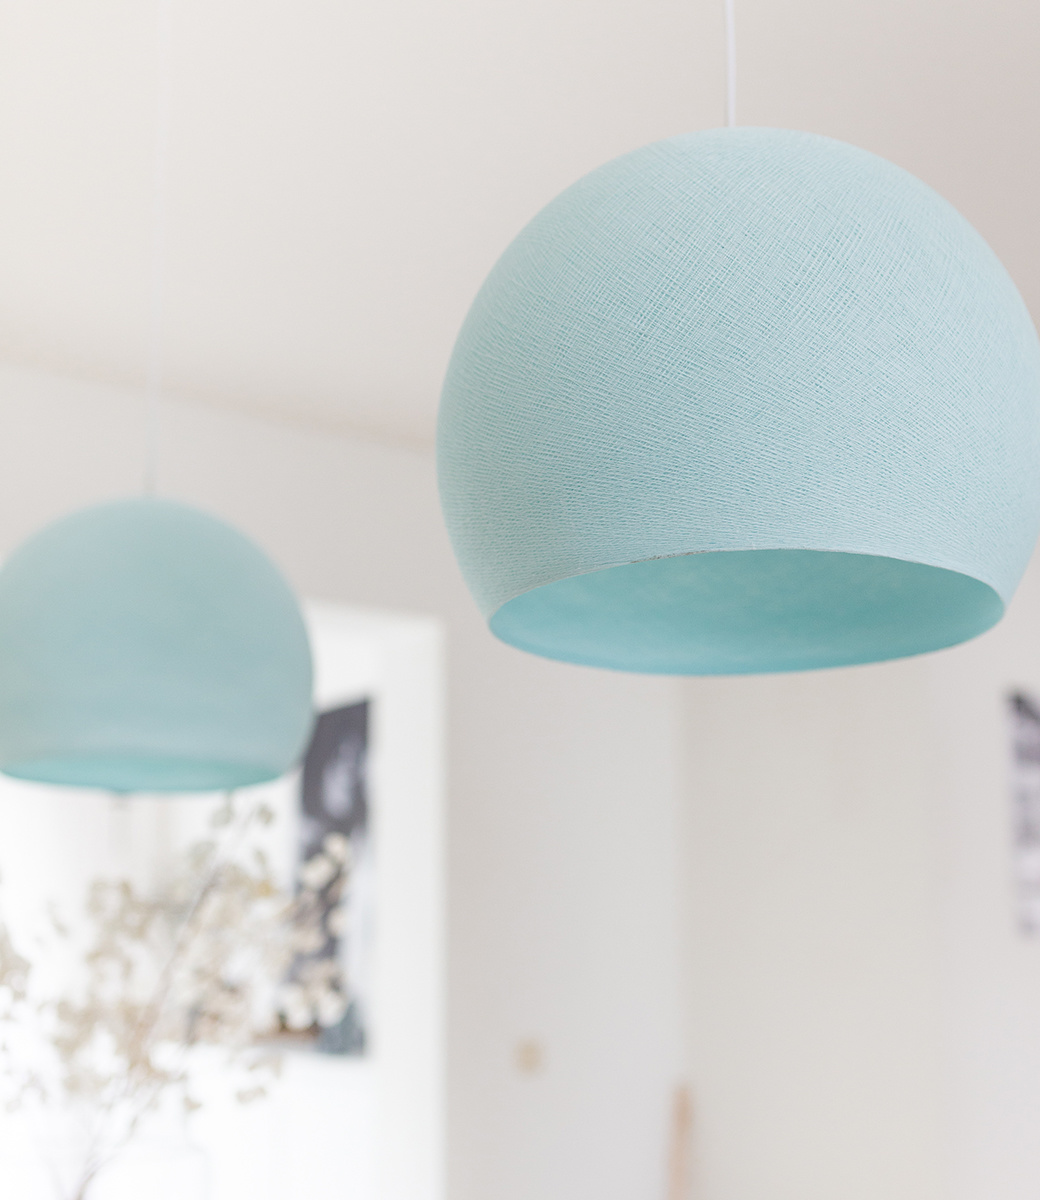 Cotton Ball Lights driekwart hanglamp licht blauw - Light Aqua